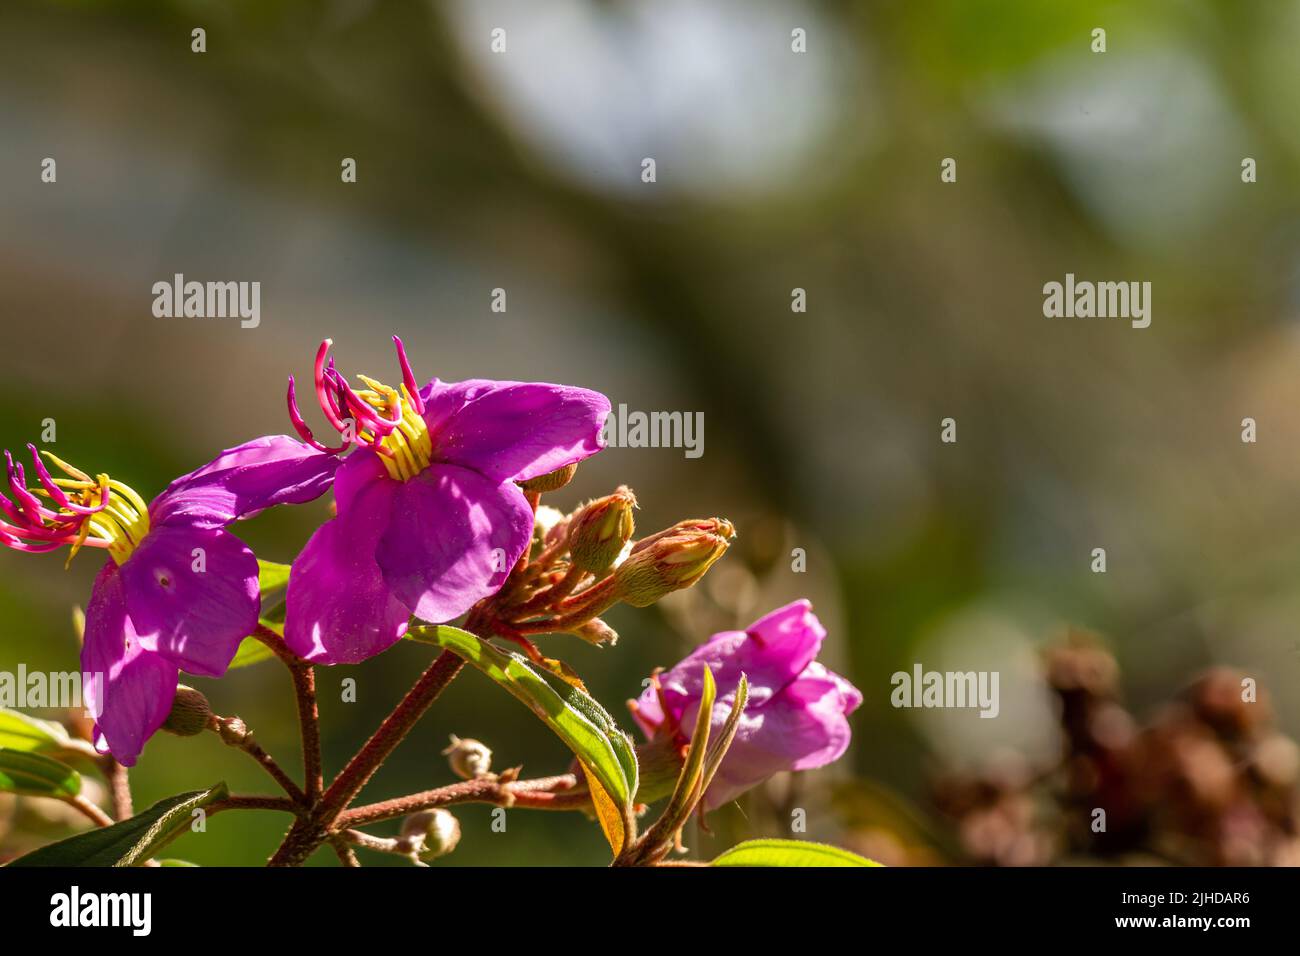 Flores y frutos de la planta del rododendro indio, pétalos púrpura, hojas verdes en forma de corazón con una superficie áspera. Vegetación natural de montaña Foto de stock